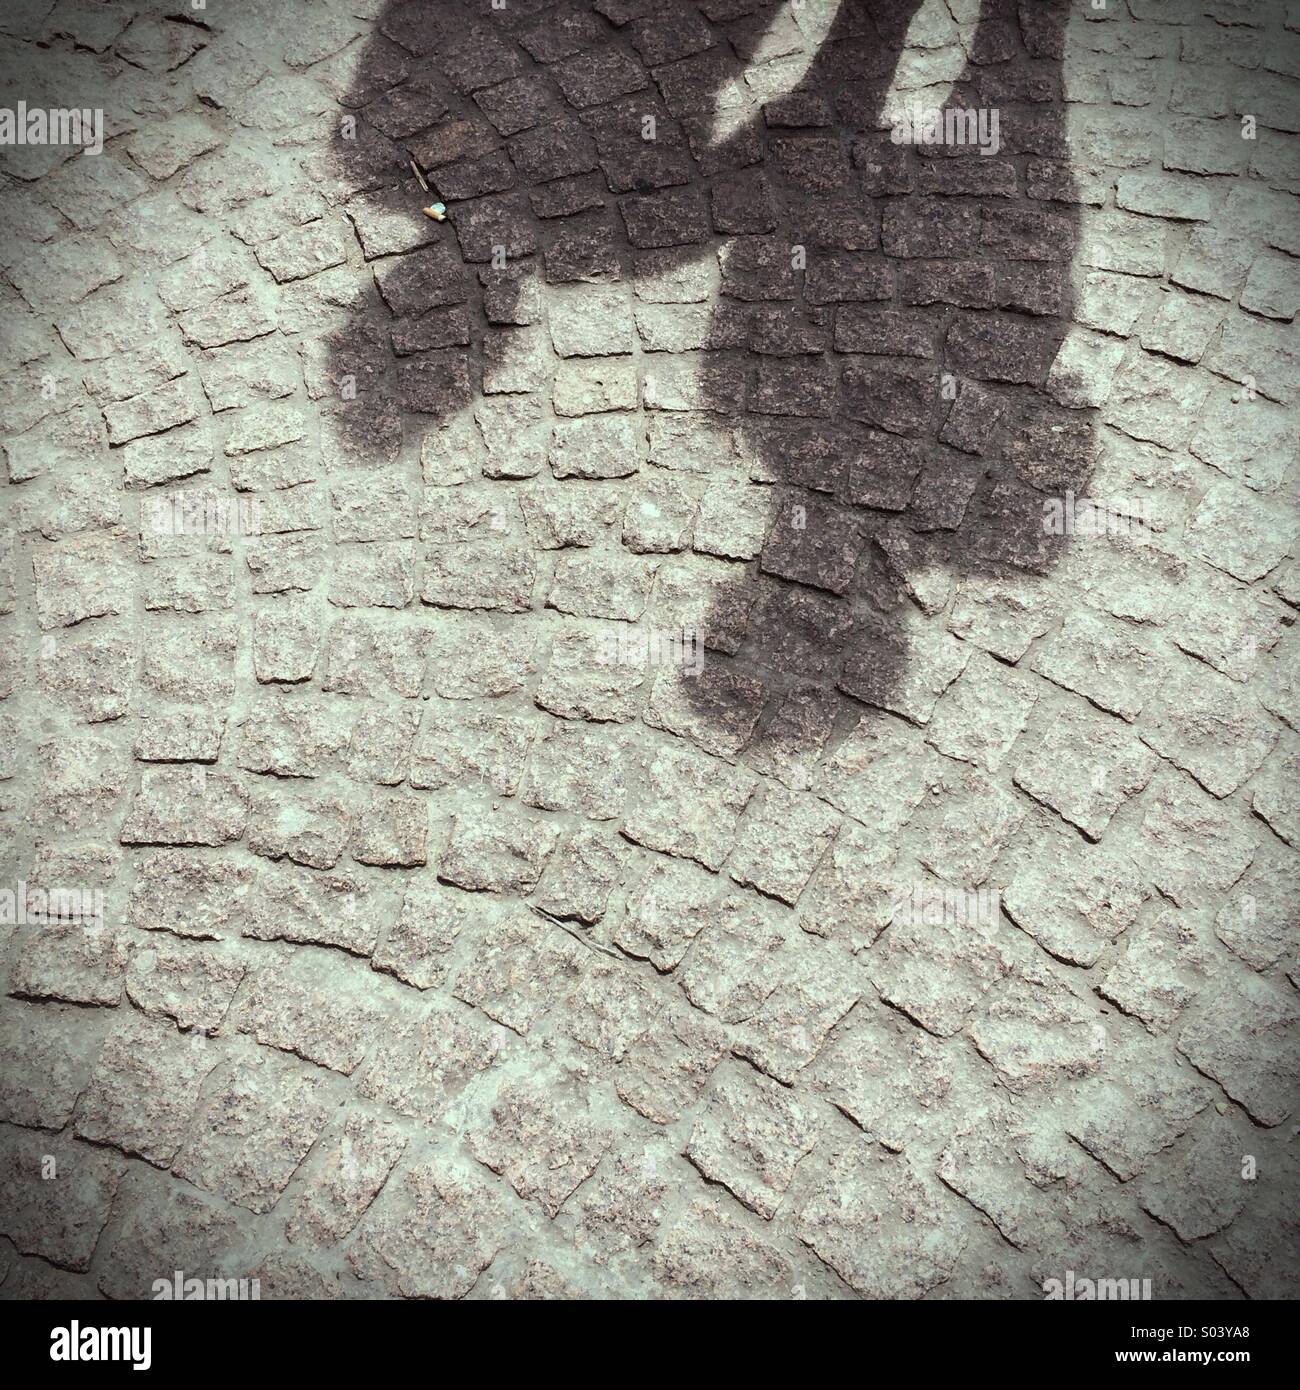 Der Schatten von zwei Menschen auf einer gepflasterten Straße Stockfoto